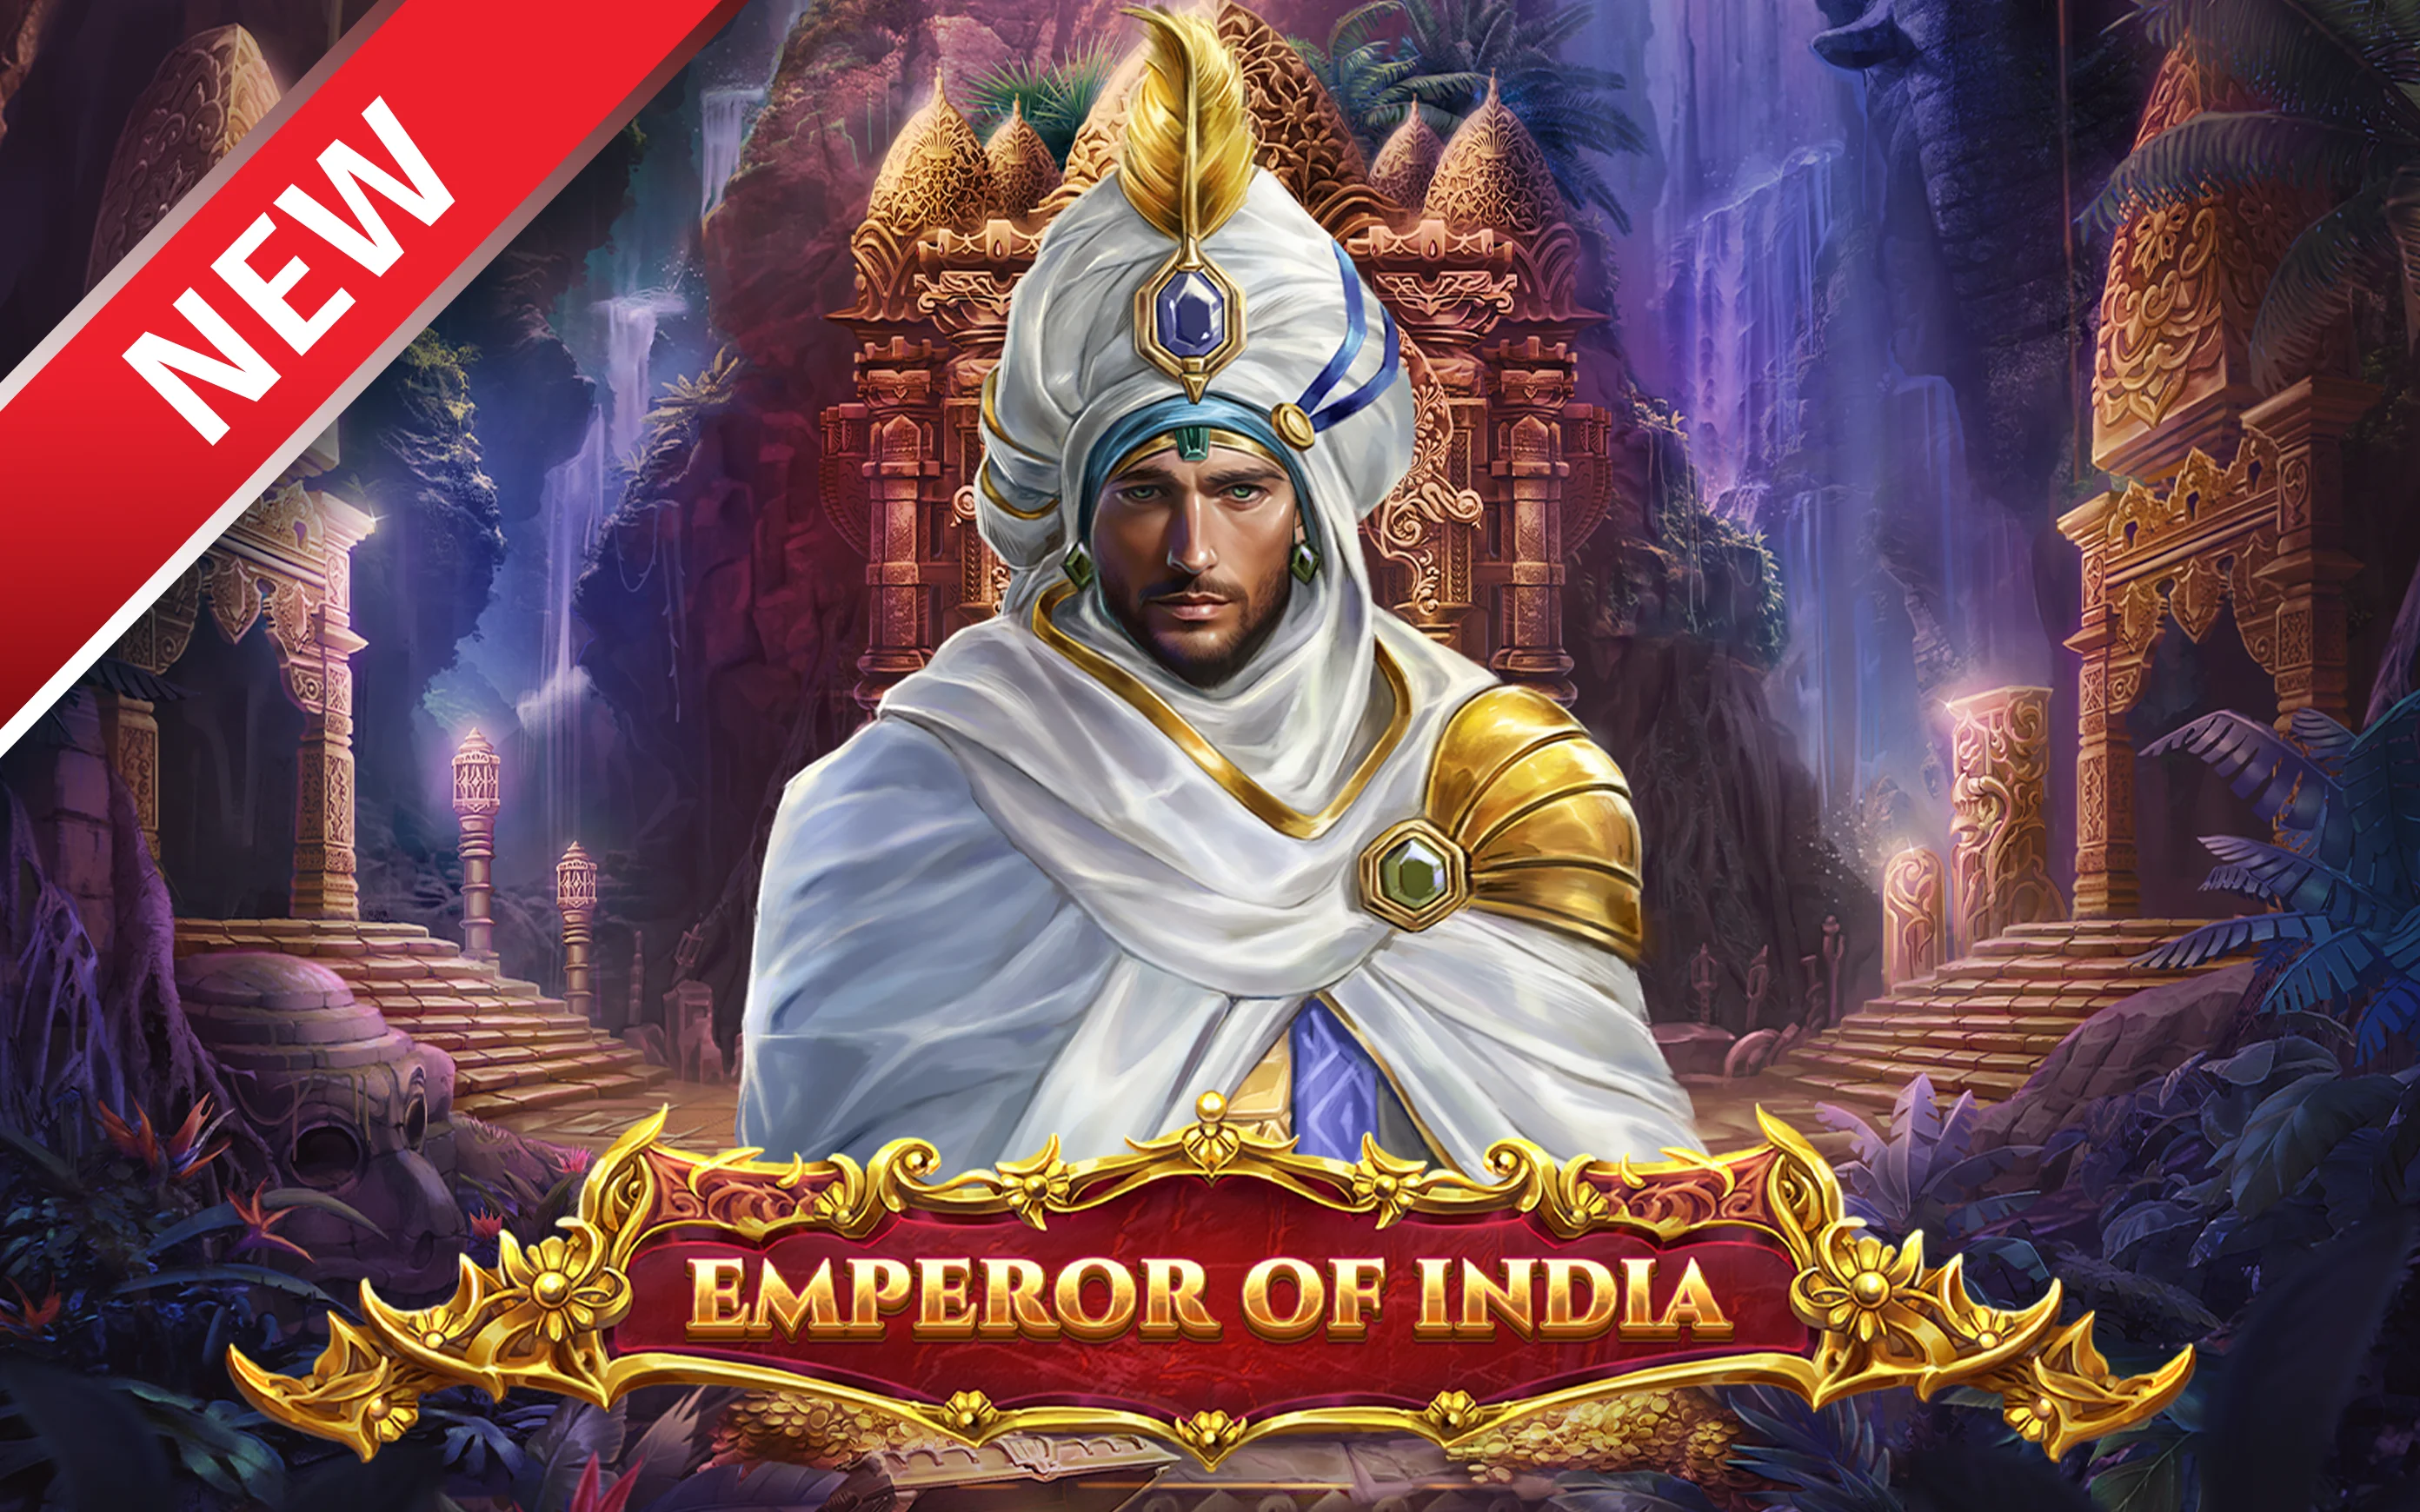 Gioca a Emperor of India sul casino online Starcasino.be